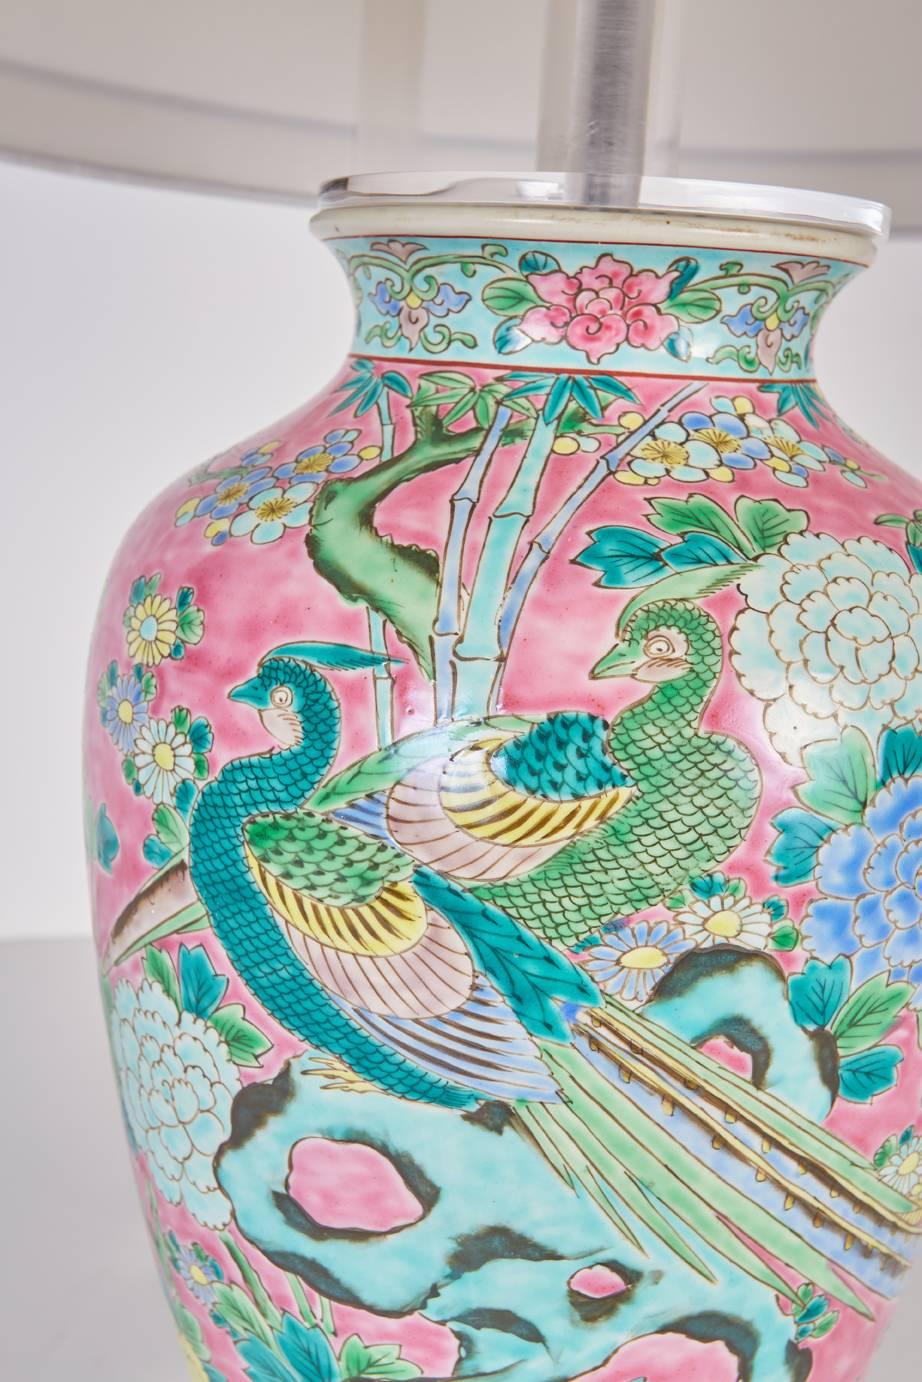 antique japanese porcelain lamps